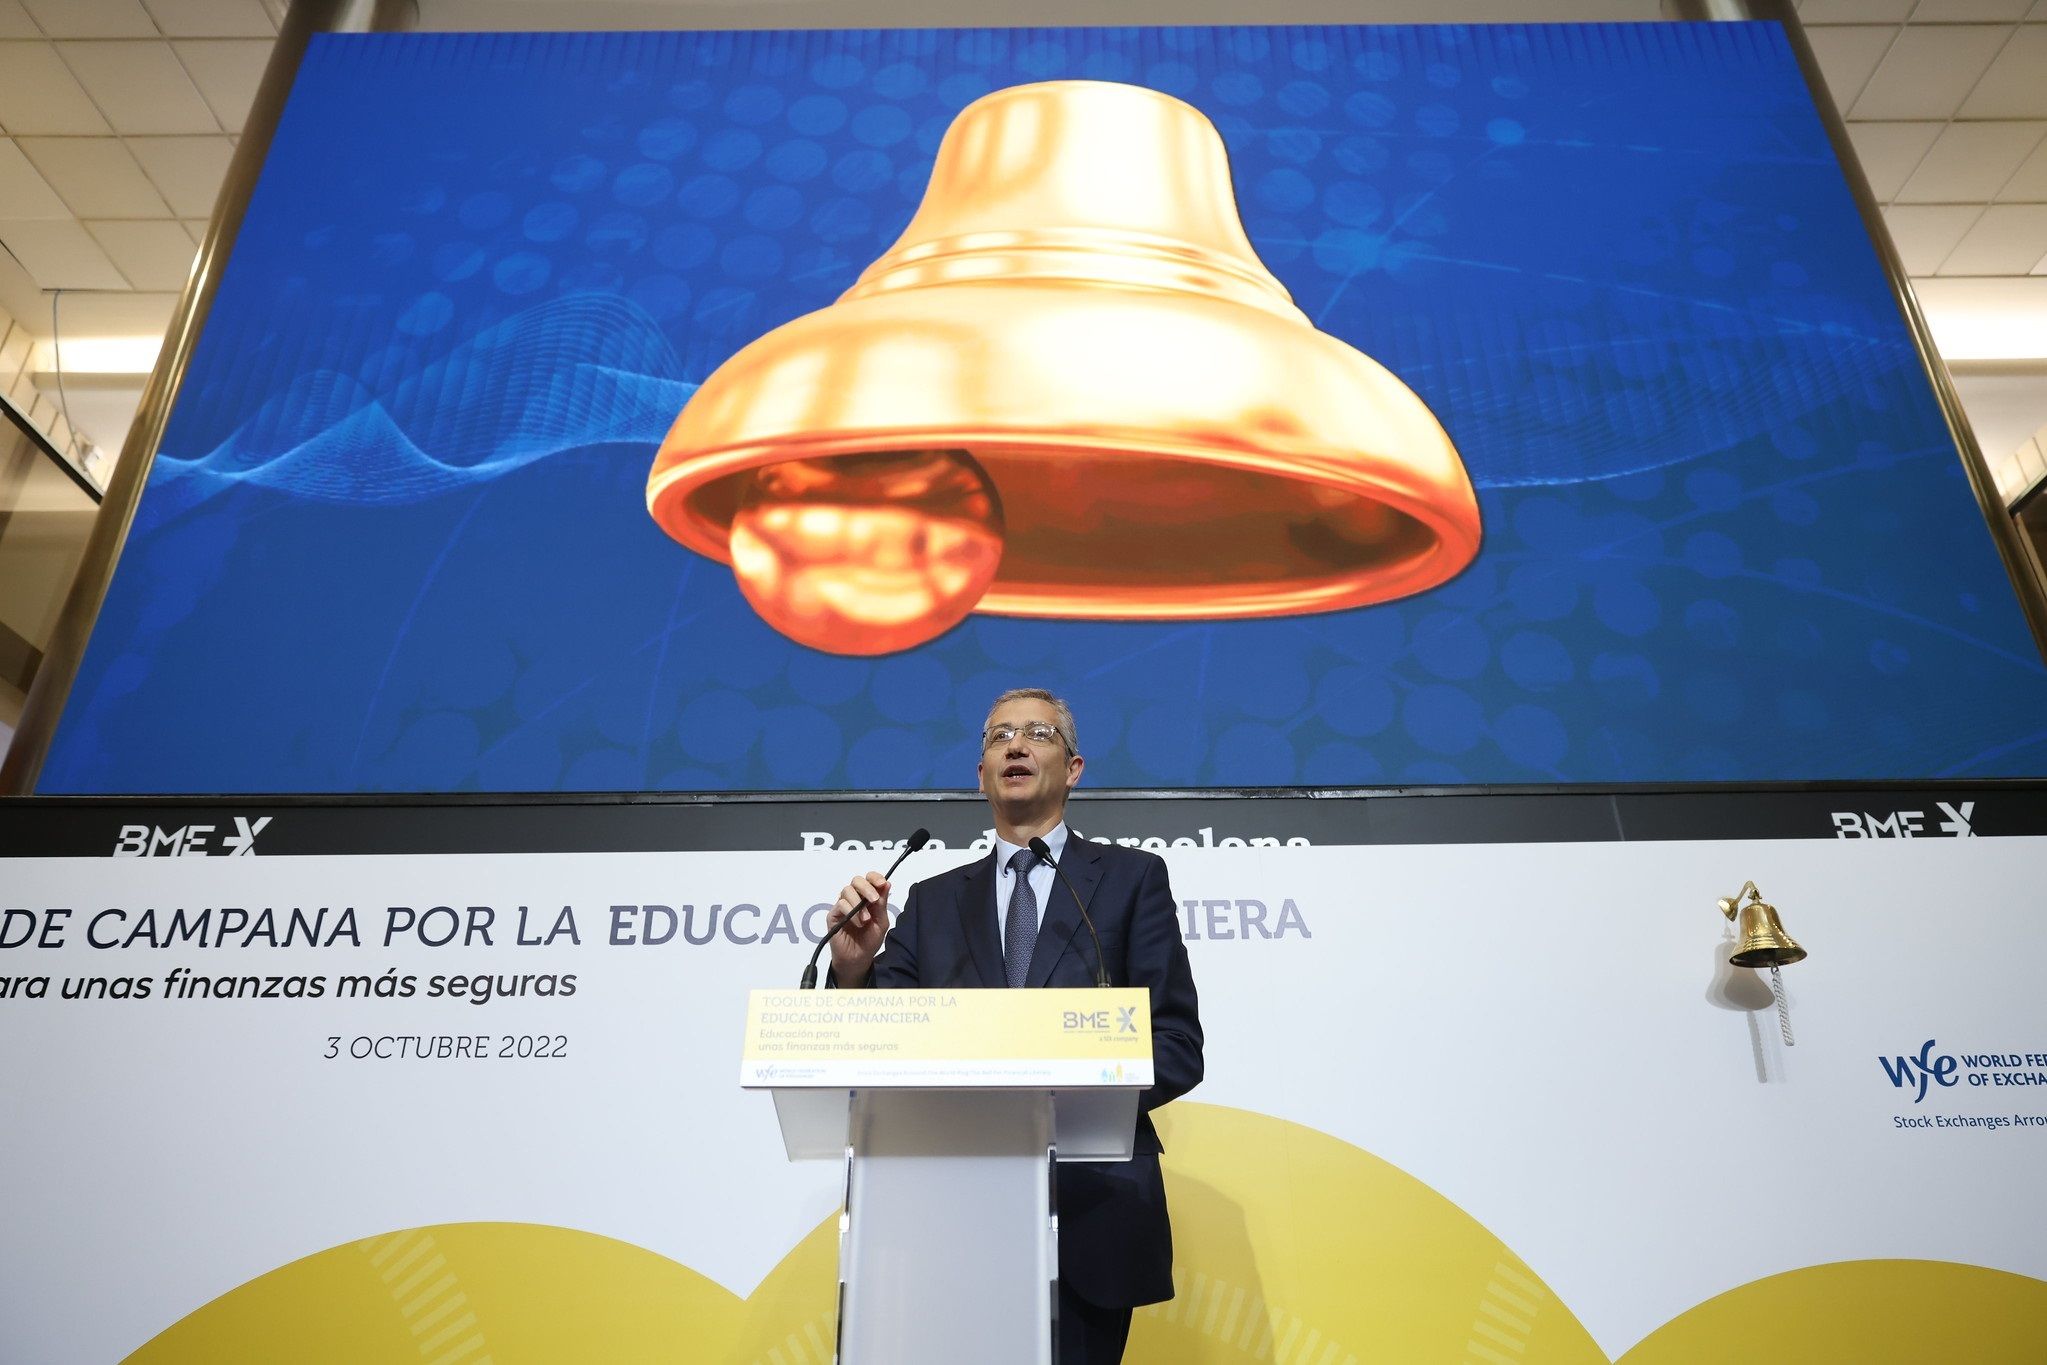 Banco de España: "Los mayores necesitan educación financiera y digital para tomar buenas decisiones"